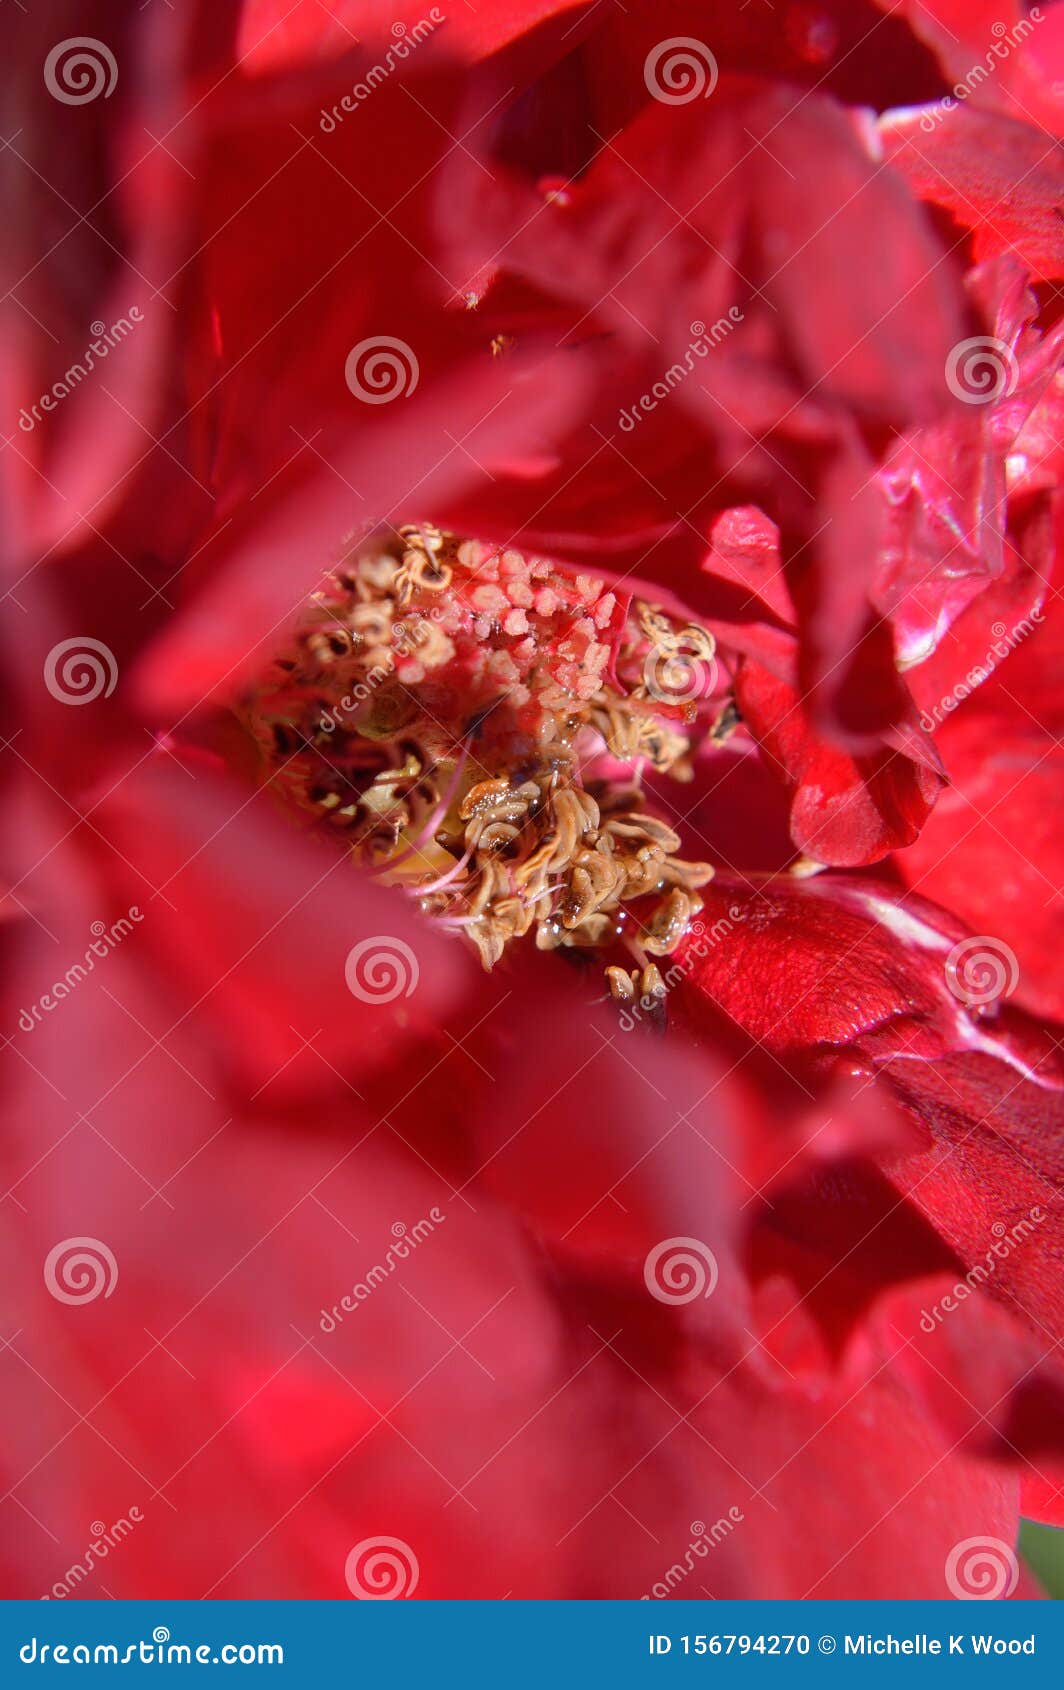 closeup center red rose showing pistil stamen stigma filaments